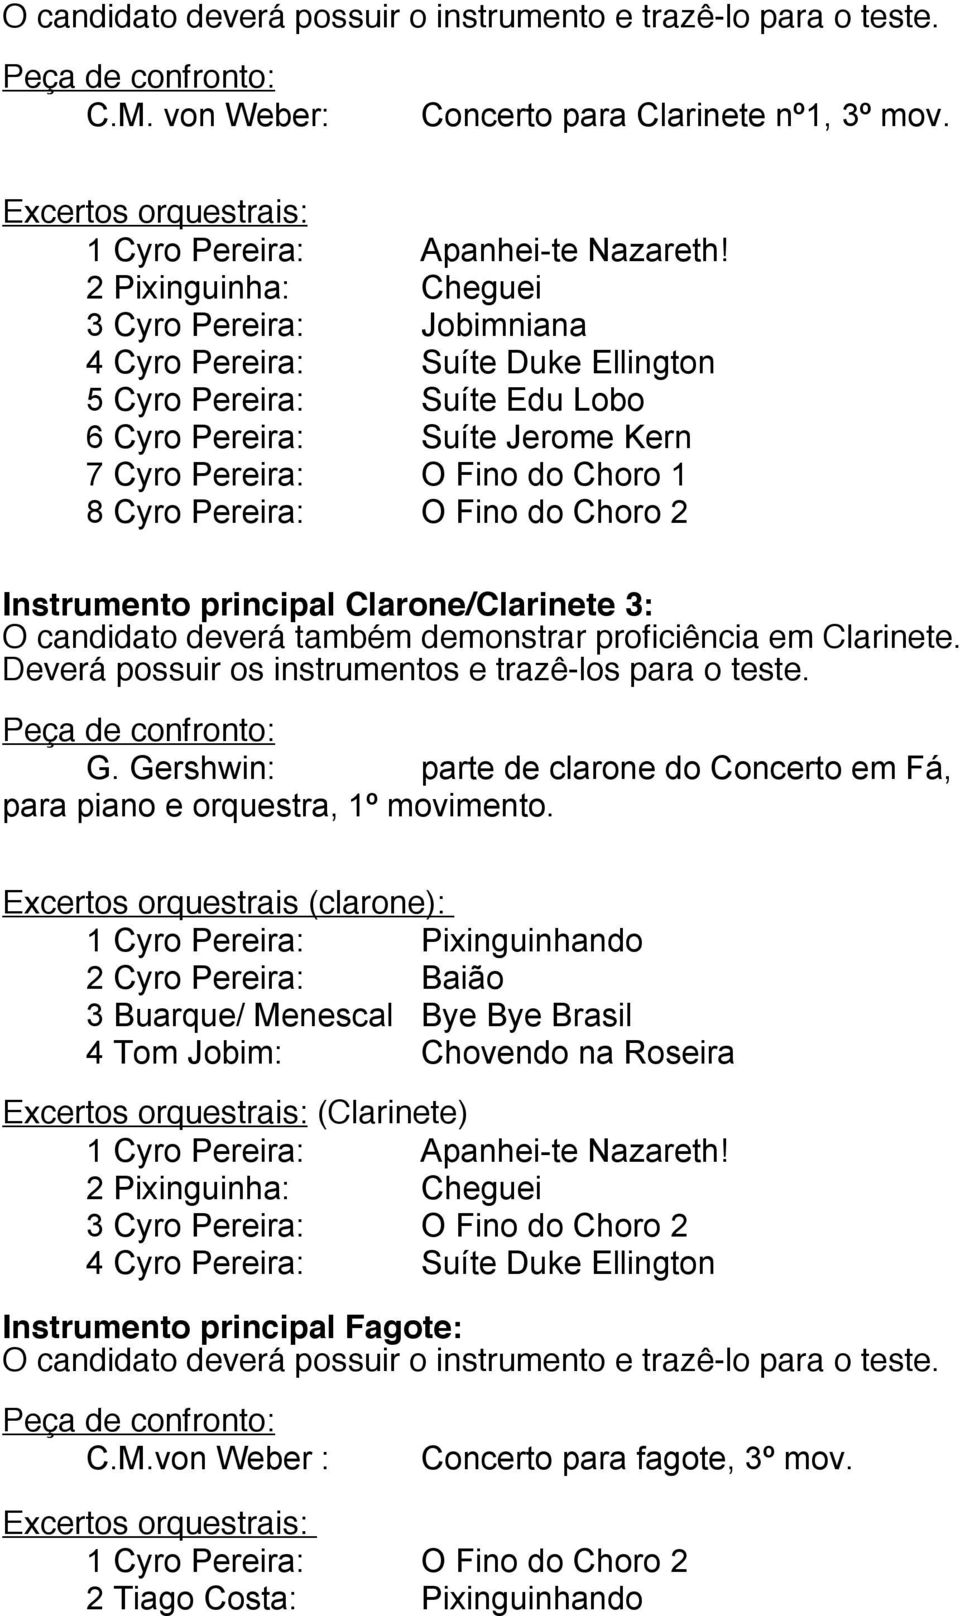 Instrumento principal Clarone/Clarinete 3: O candidato deverá também demonstrar proficiência em Clarinete. G. Gershwin: parte de clarone do Concerto em Fá, para piano e orquestra, 1º movimento.